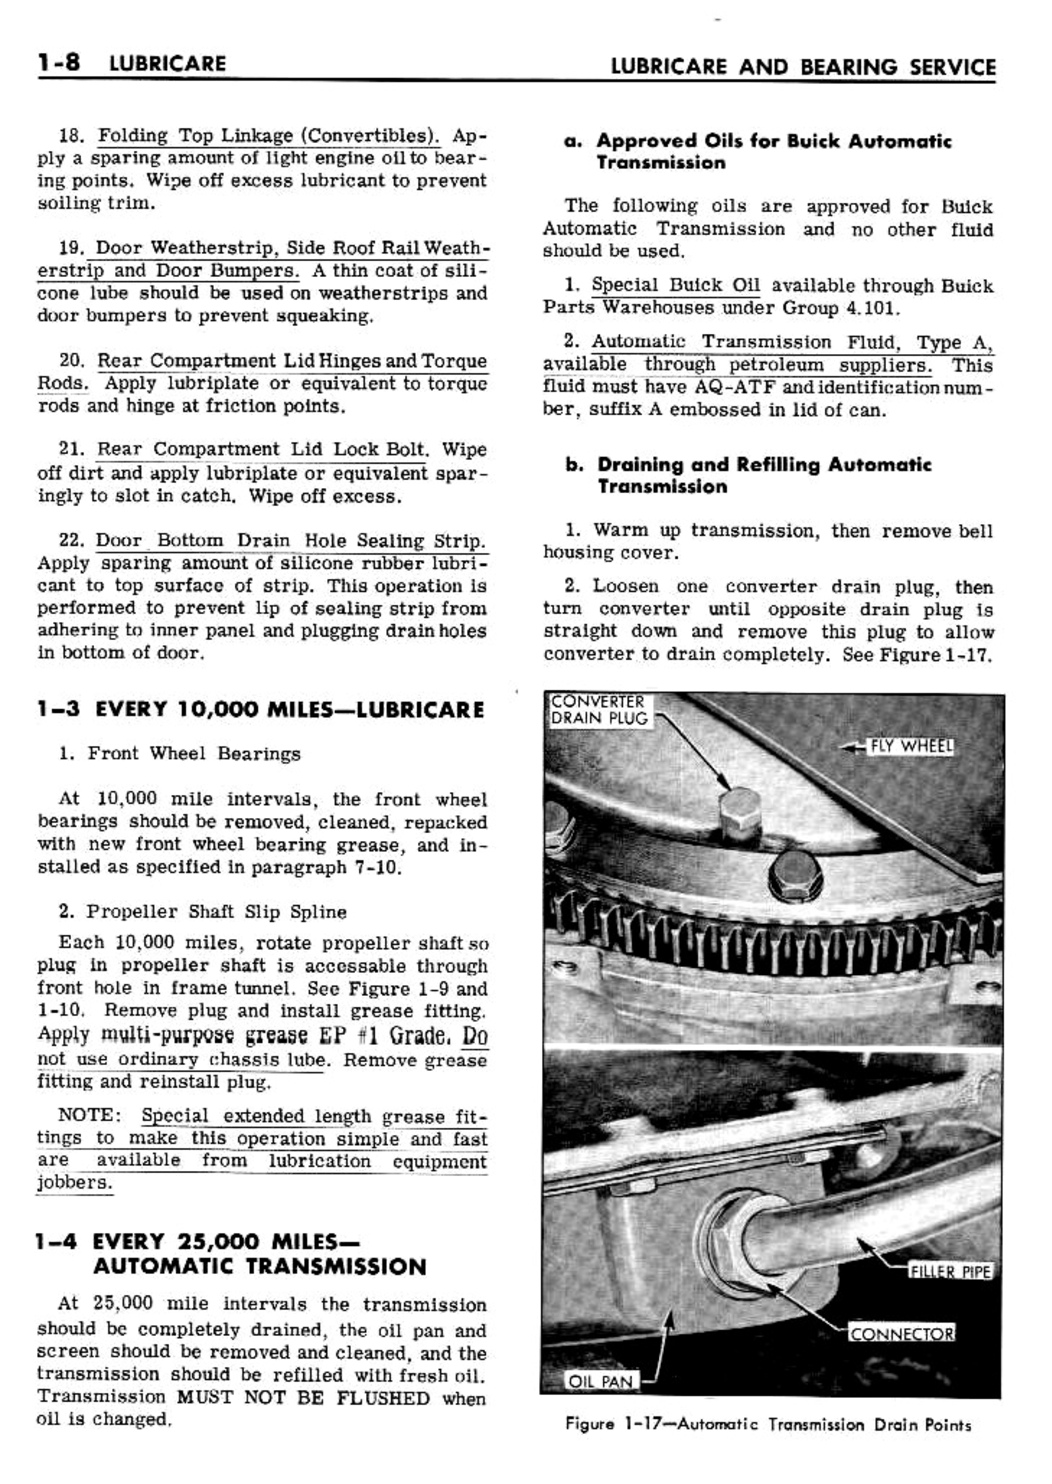 n_02 1961 Buick Shop Manual - Lubricare-008-008.jpg